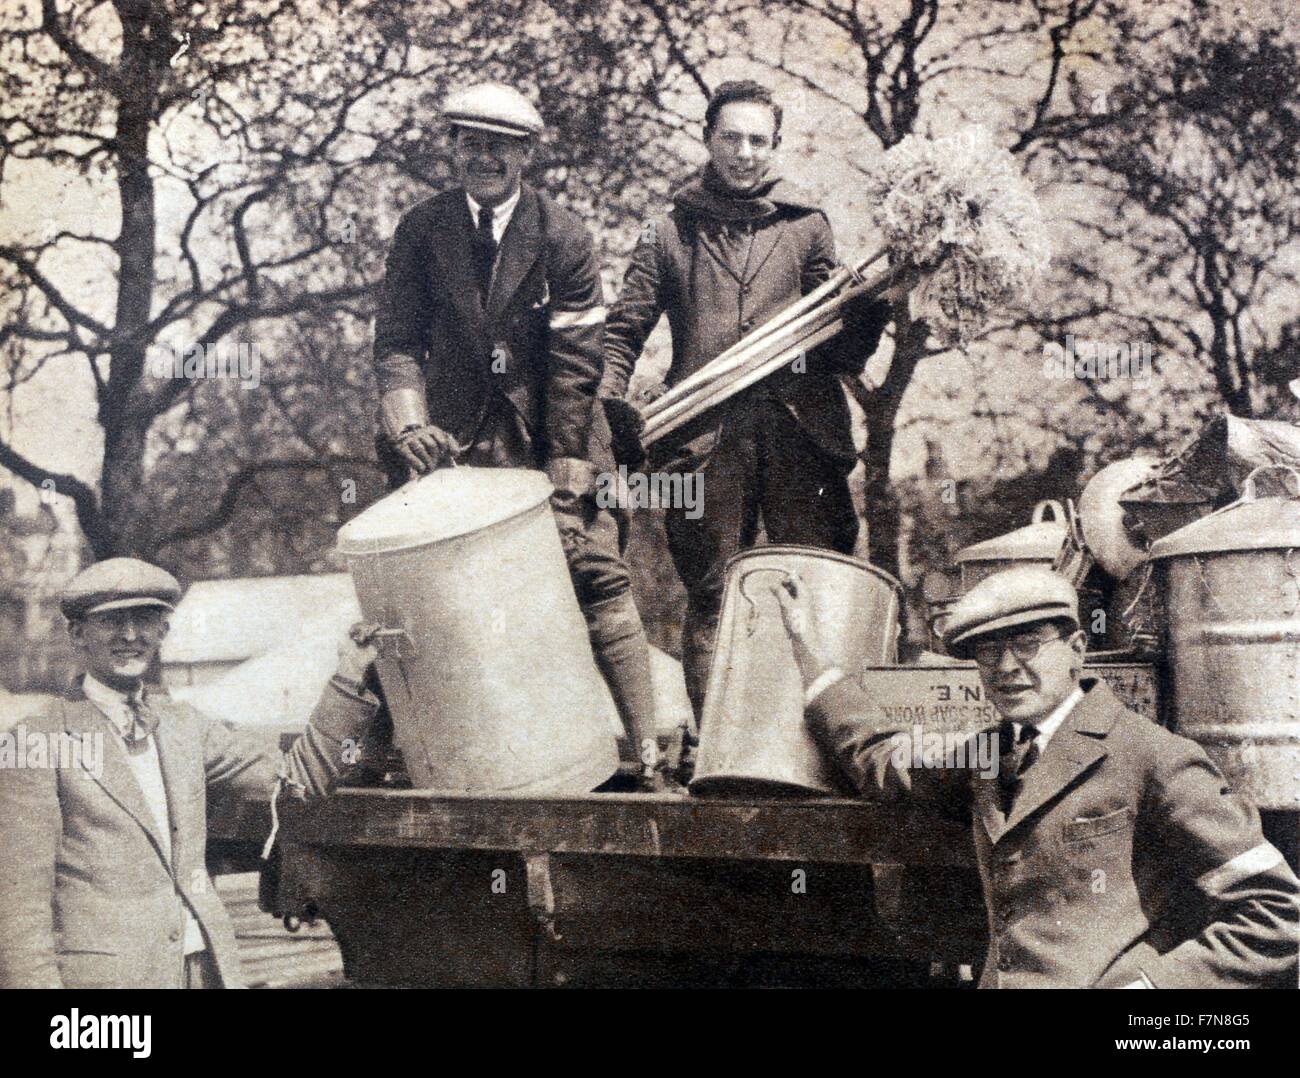 Photographie de travailleurs bénévoles dans la région de Hyde Park au cours de la grève générale. Datée 1926 Banque D'Images